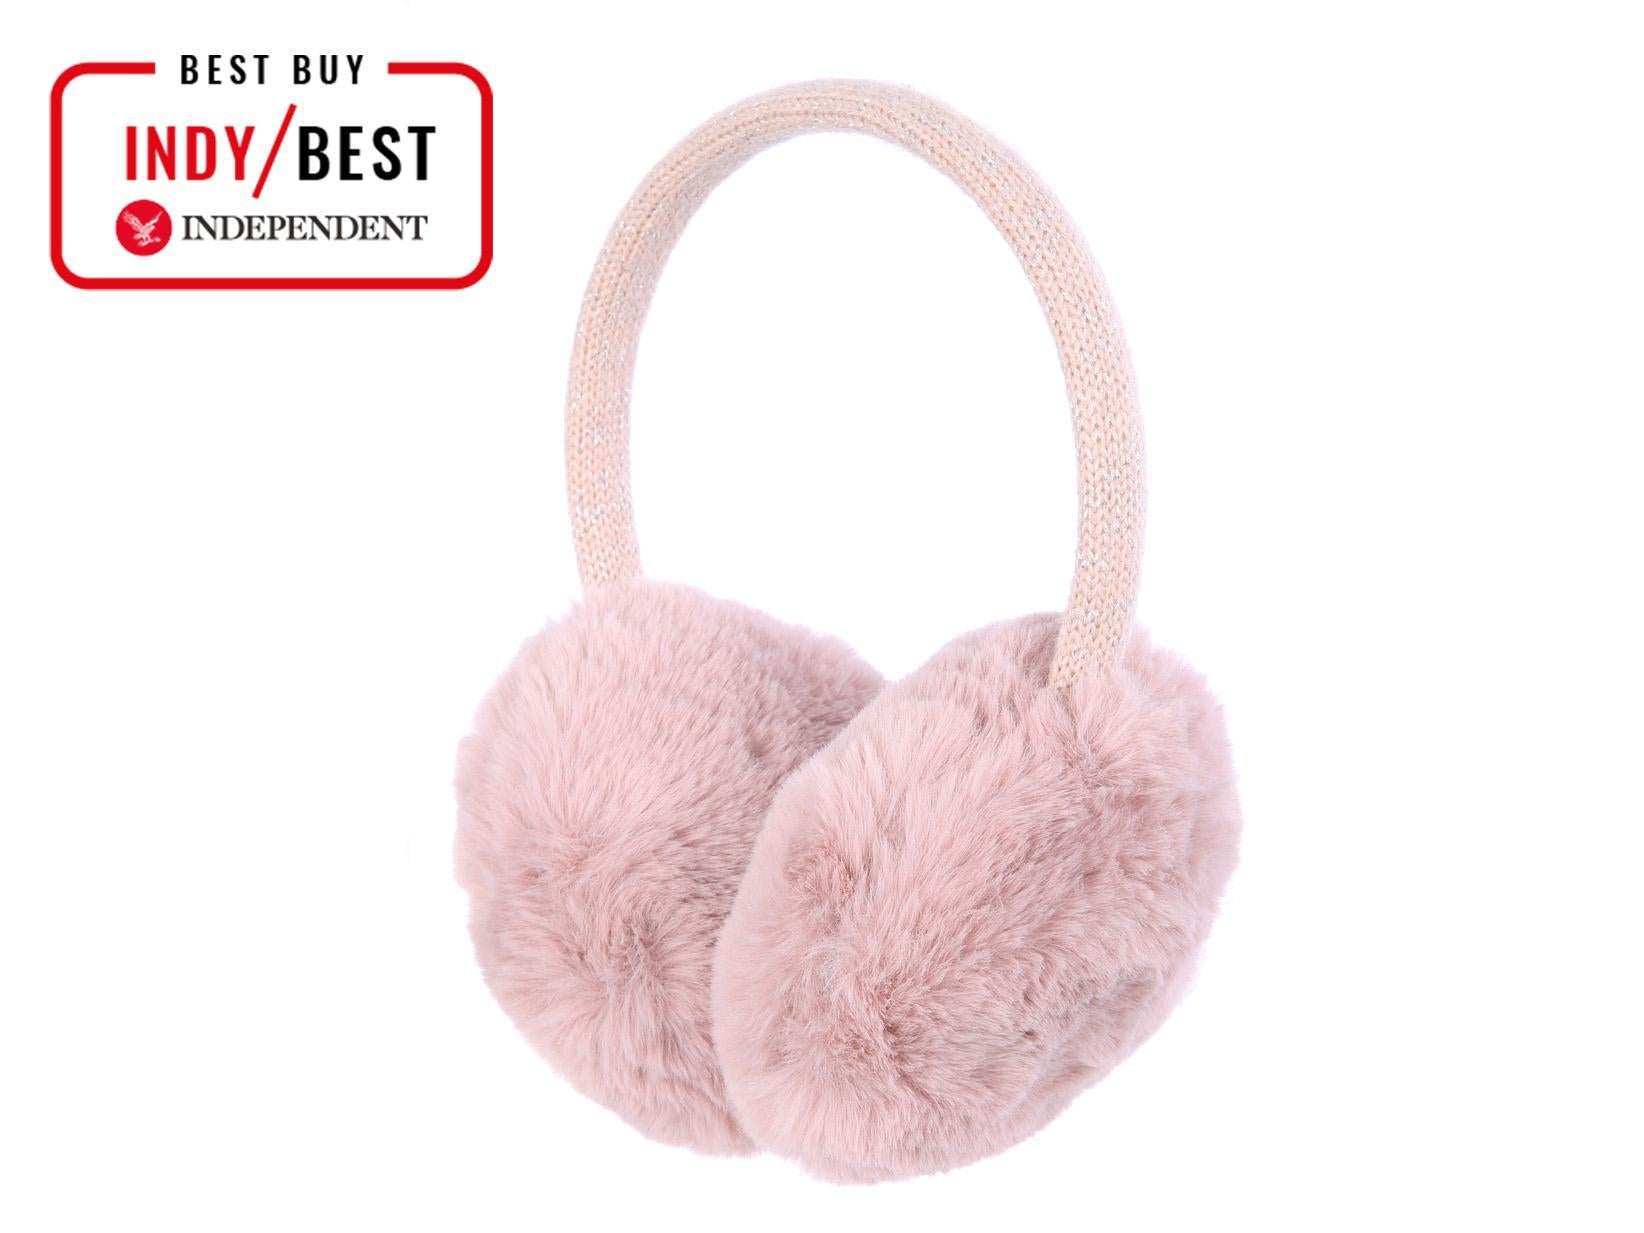 Sherry Unisex Fleece Plush Earmuffs Winter Foldable Ear Warmers Sport Outdoor Travel Ear Muffs